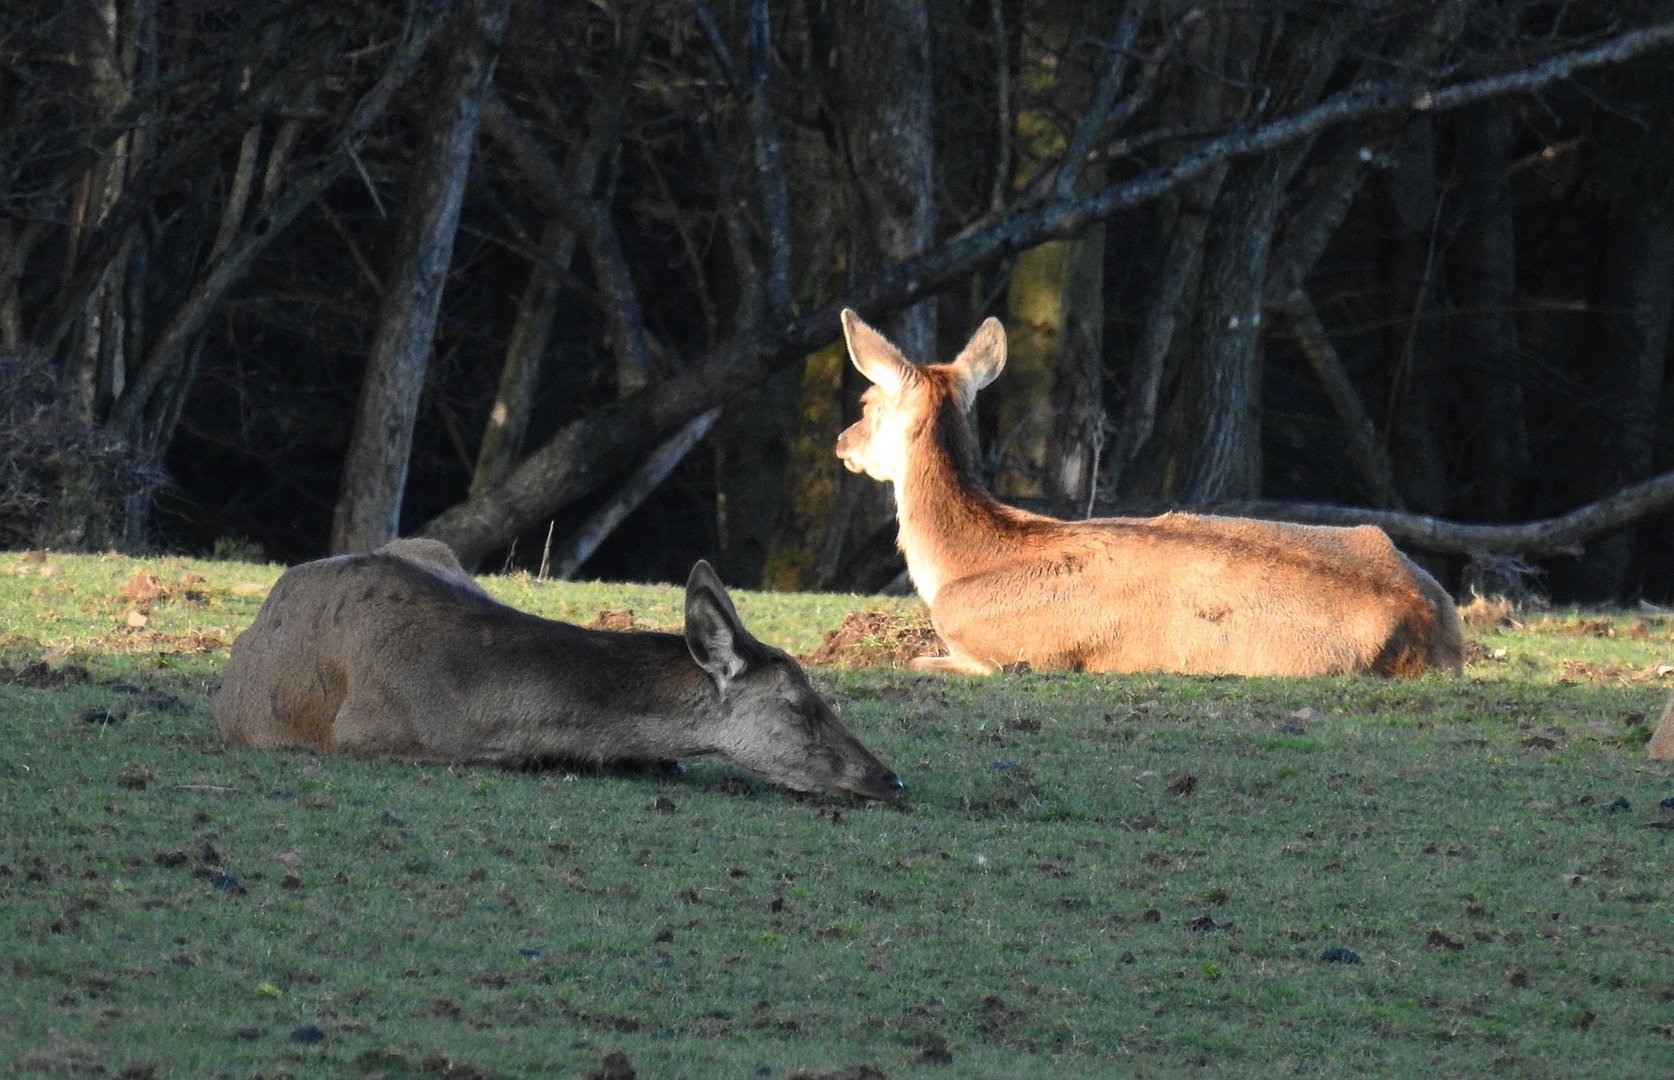 Zwei Hirschkühe ruhen ganz entspannt auf der Waldwiese